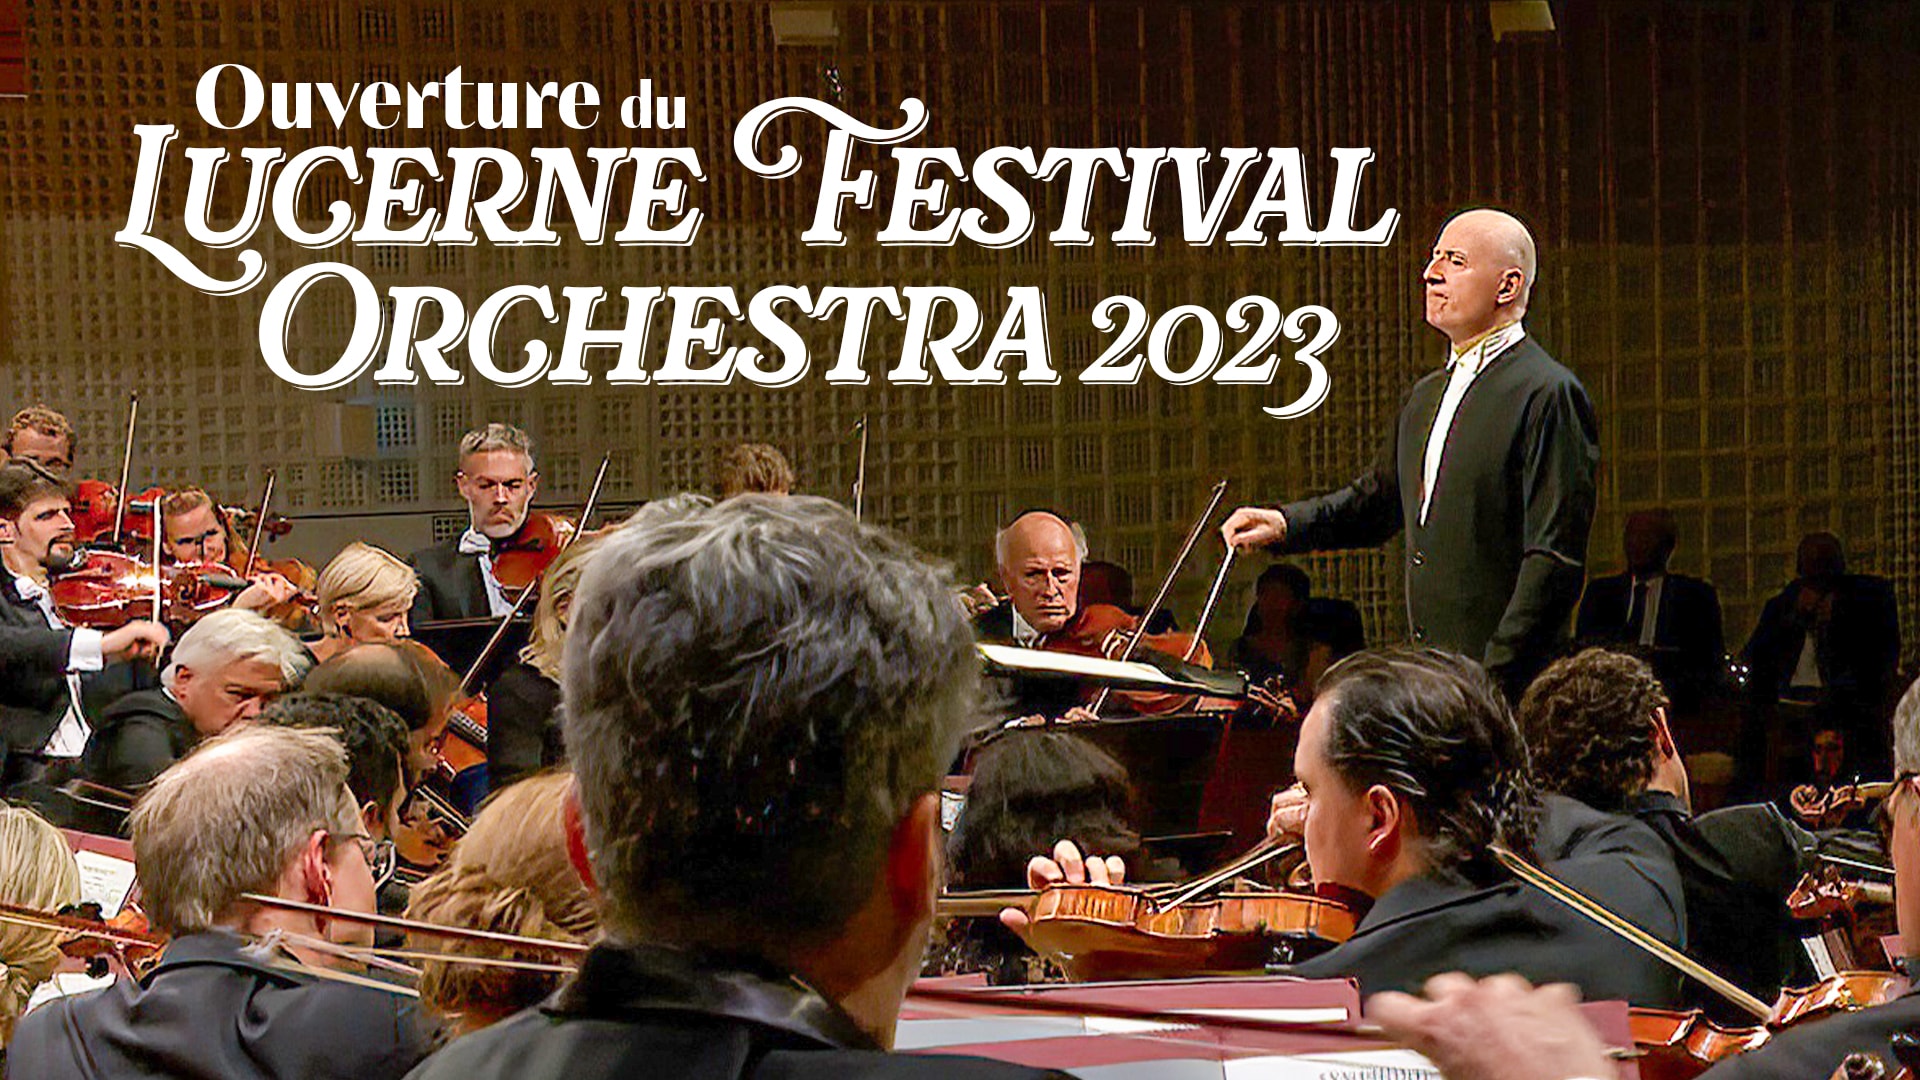 Ouverture du Lucerne Festival Orchestra 2023